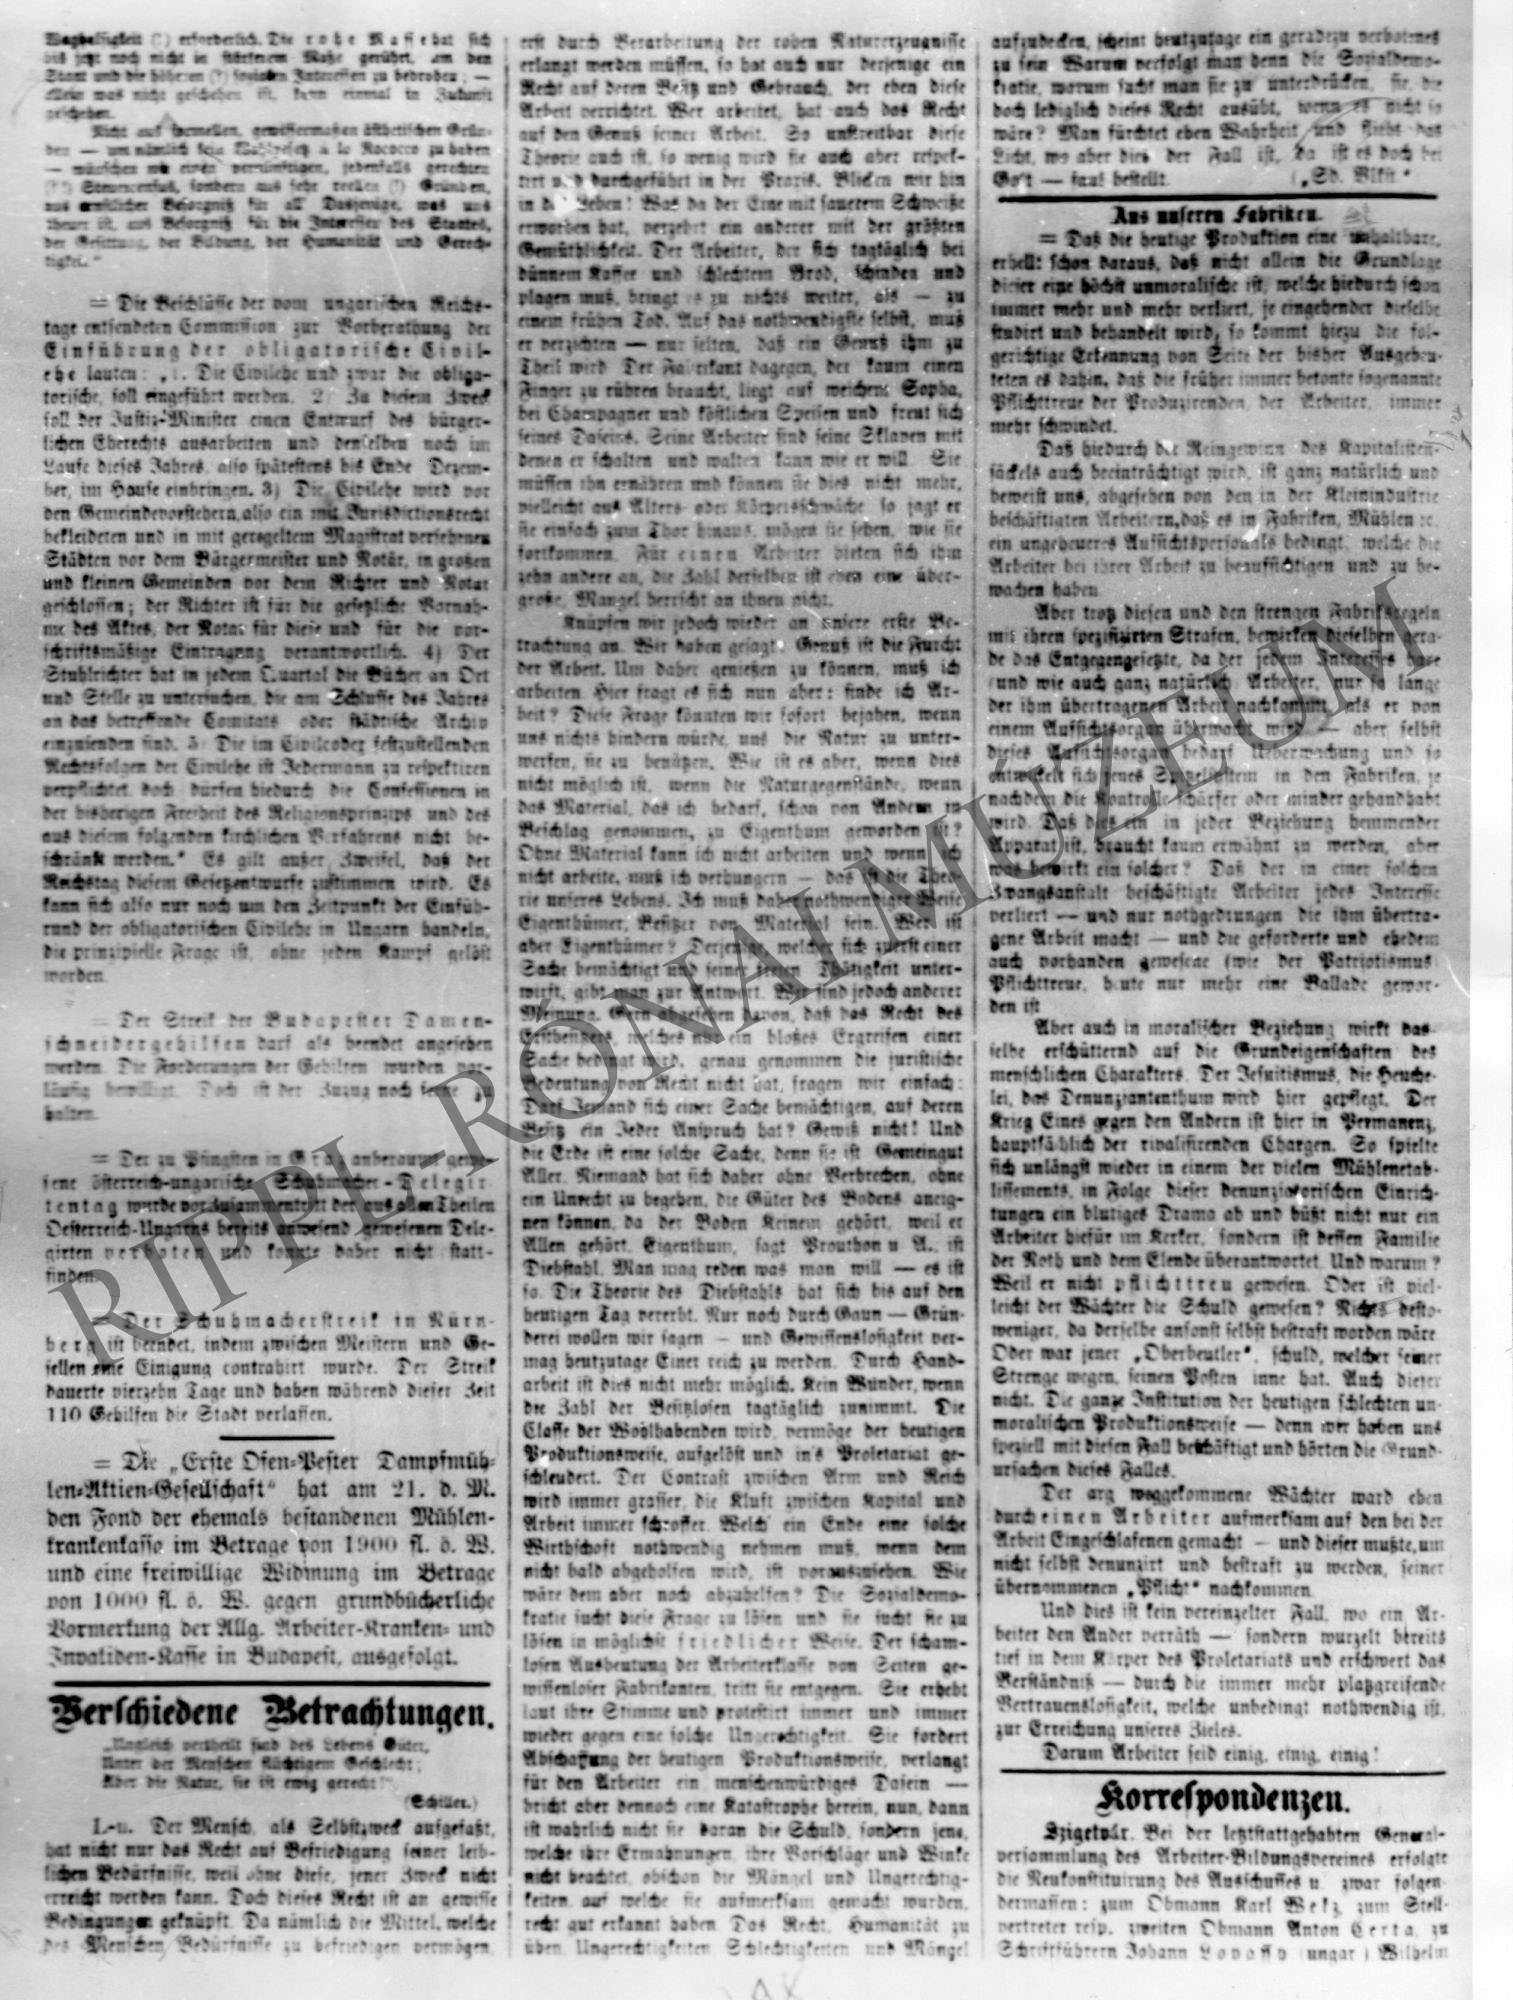 Arbeiter Wochen Chronic 1874. május 31. cikke - A szigetvári Munkás Művelődési Egylet kiáltványa - 1. rész (Rippl-Rónai Múzeum CC BY-NC-SA)